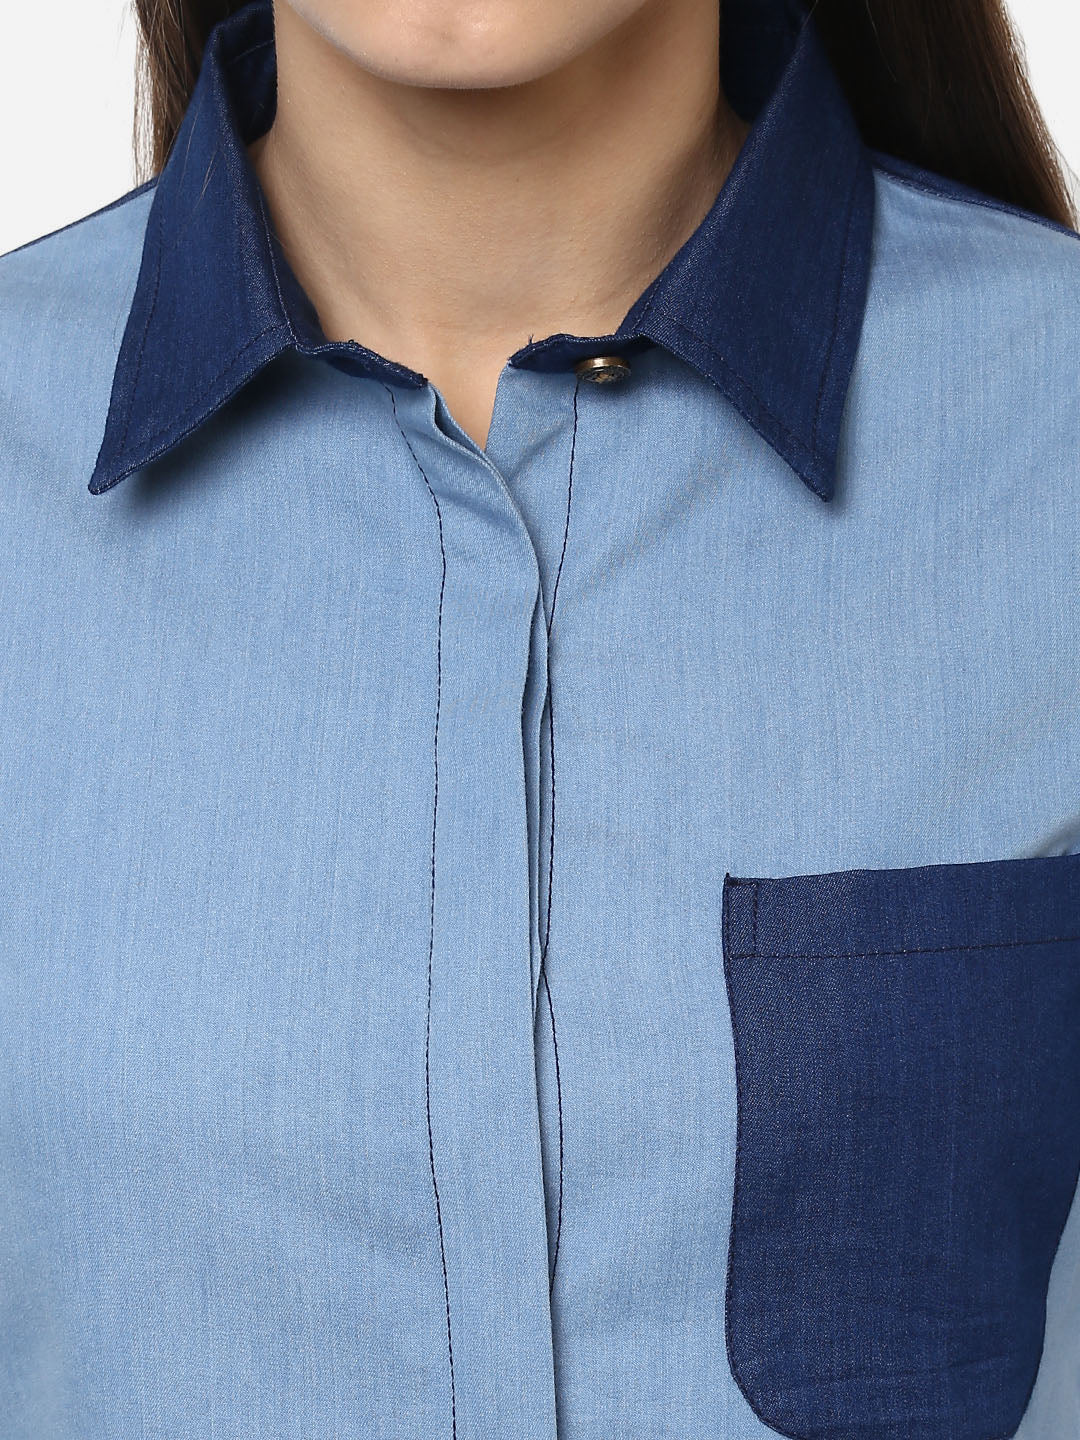 Women's Denim Light and Dark Blue Patch Shirt